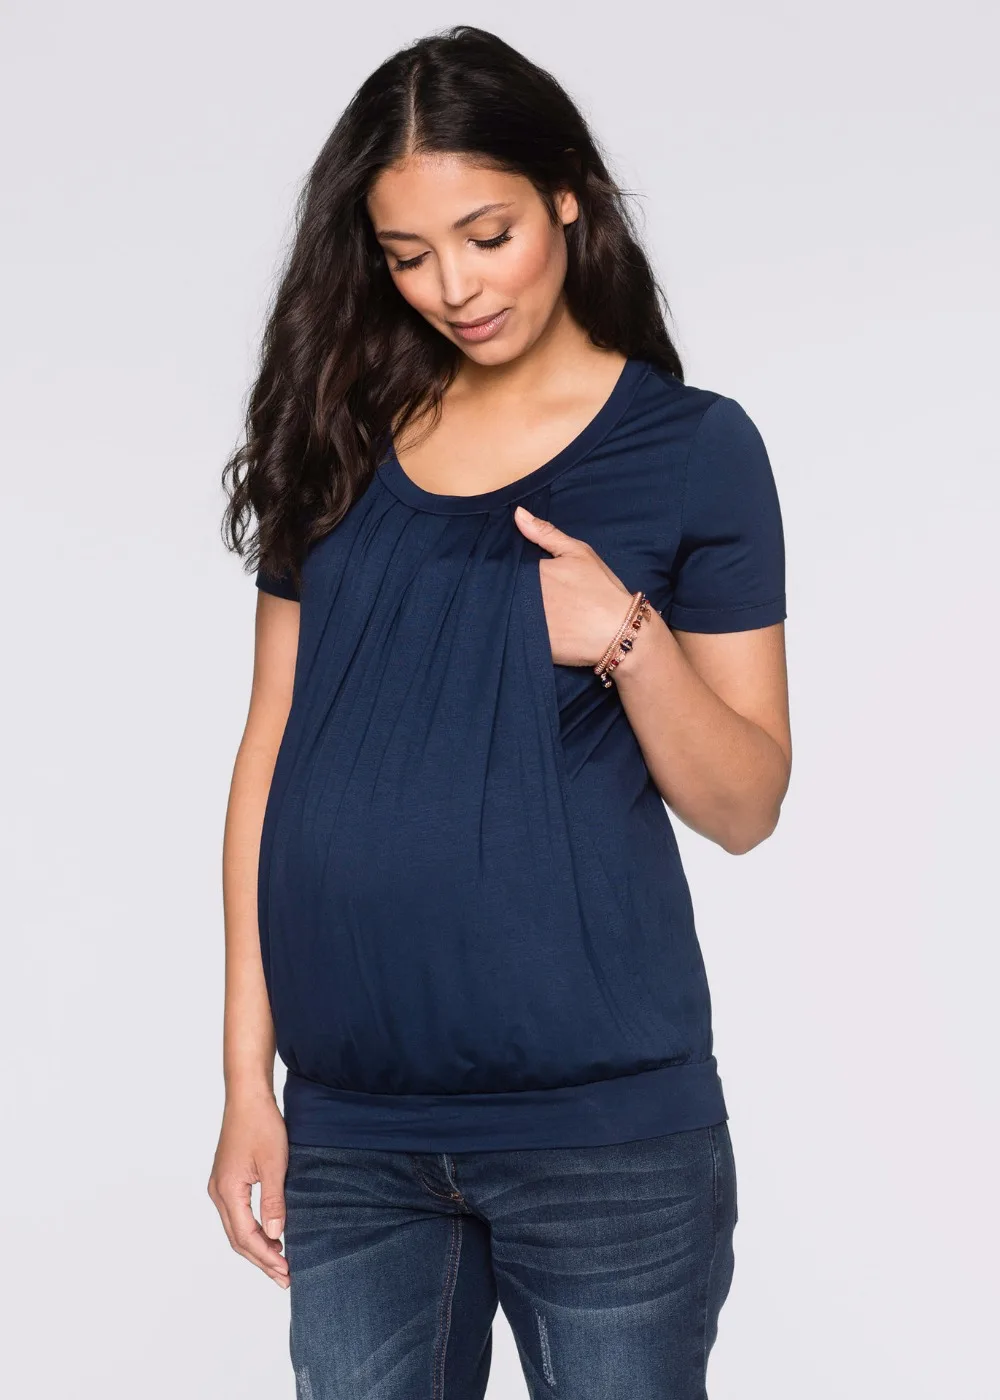 Летние футболка для грудного вскармливания для беременных Для женщин лактации Одежда для беременных и кормящих топы жилет для грудного вскармливания Беременность футболки 3XL